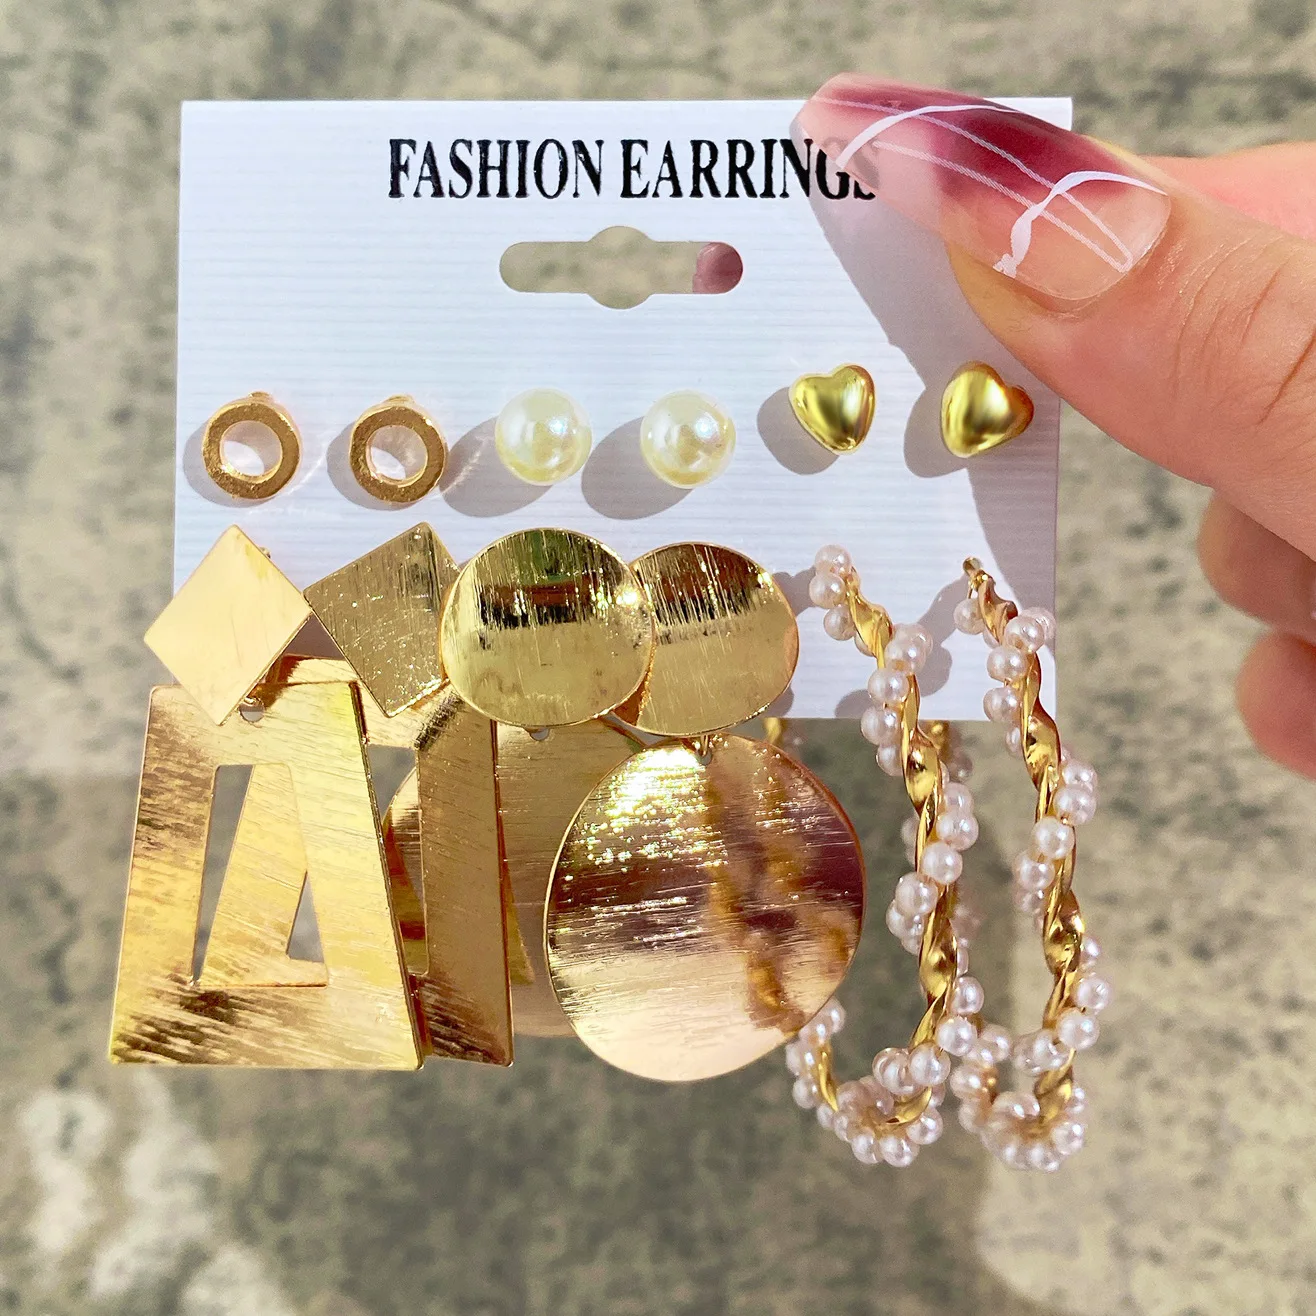 

6 пар жемчужных сережек для женщин и девушек, звено-кольцо, висячие серьги, серьги-кольца, ювелирные изделия в подарок, китайский стиль